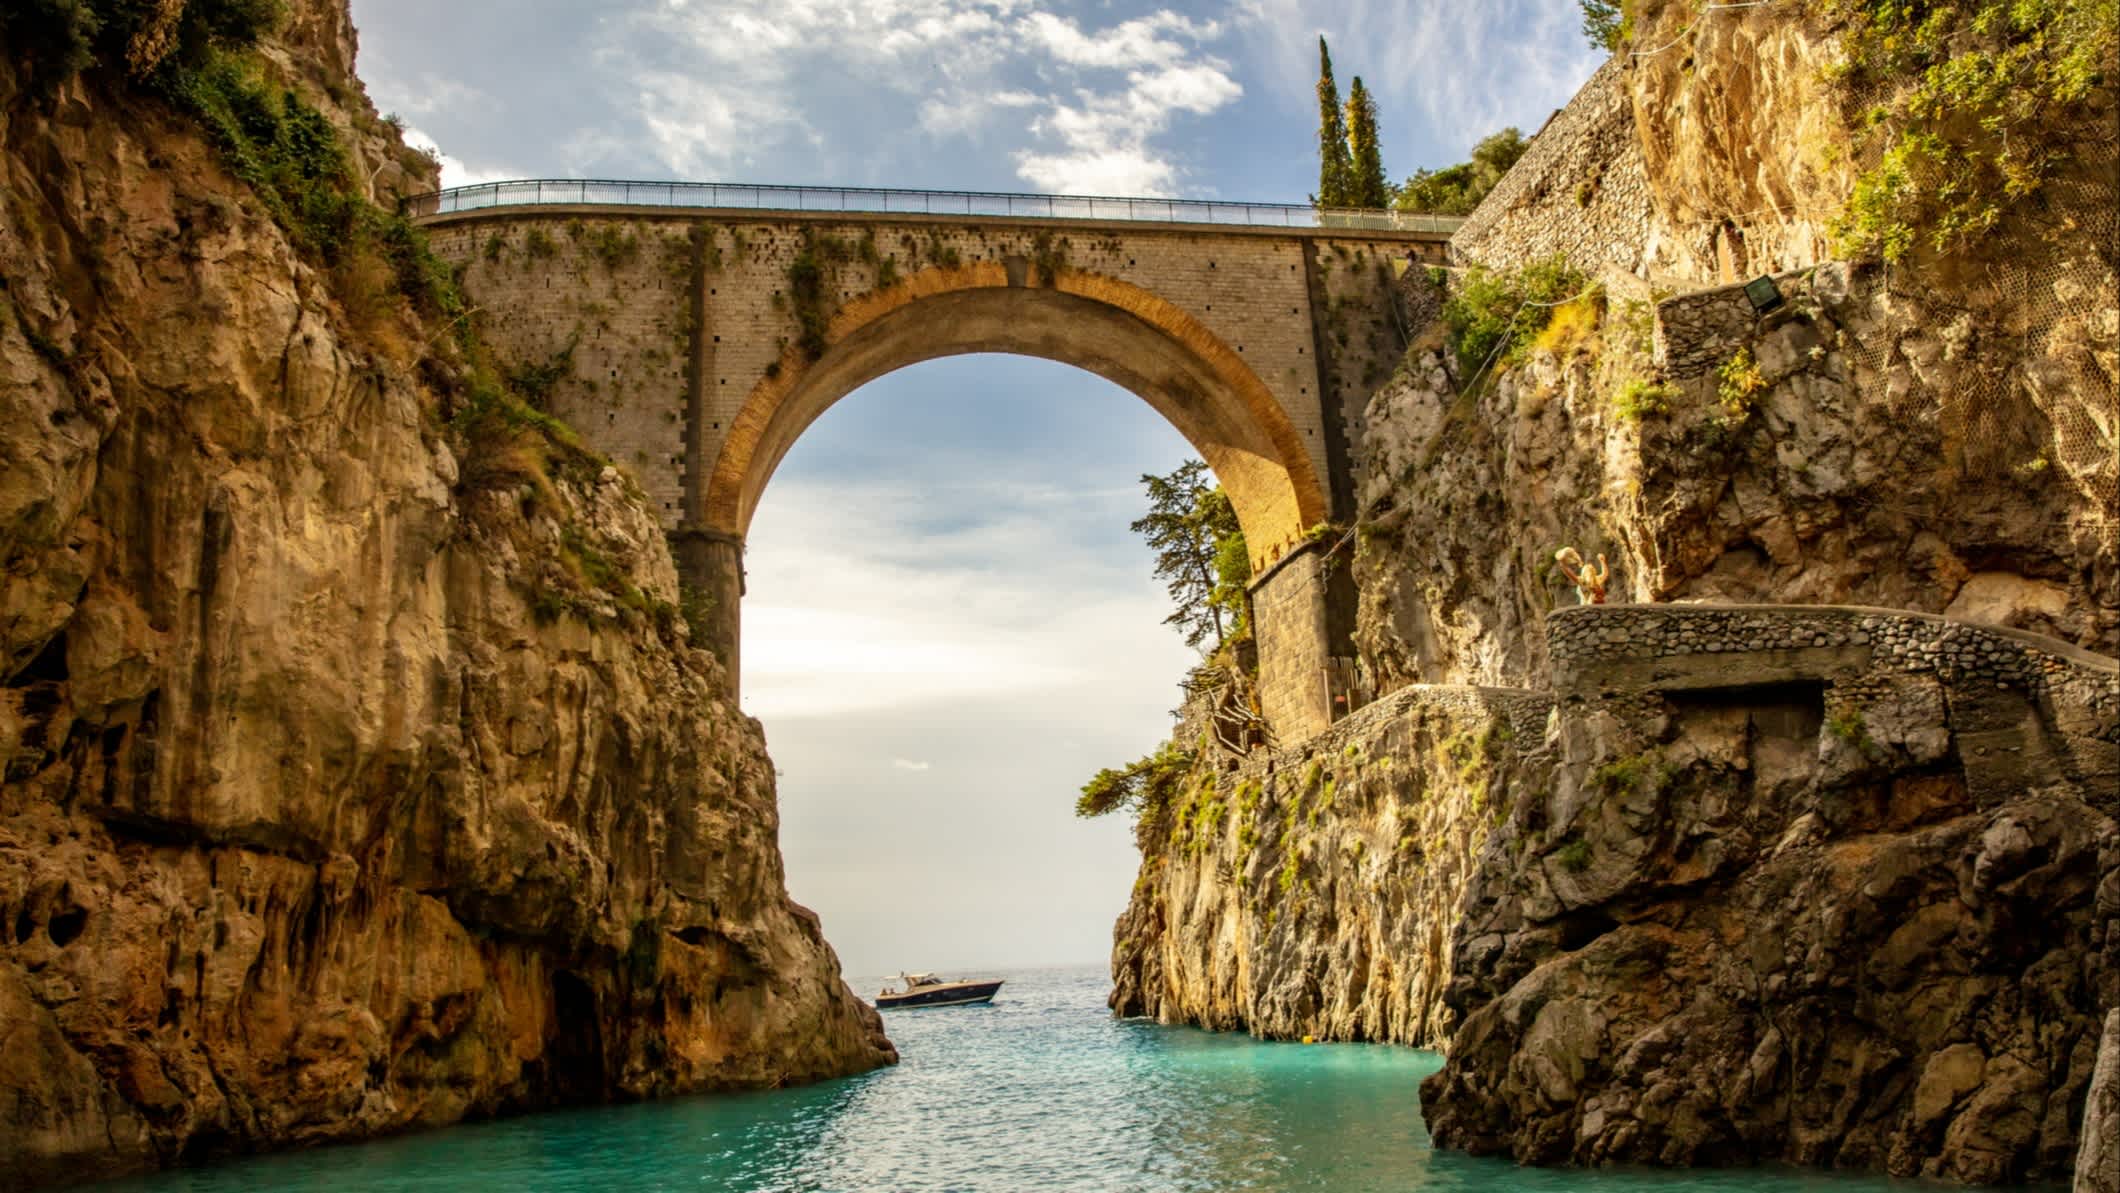 Blick auf eine alte Steinbrücke in einer kleinen Bucht zwischen großen Felsen und darunter das Meer